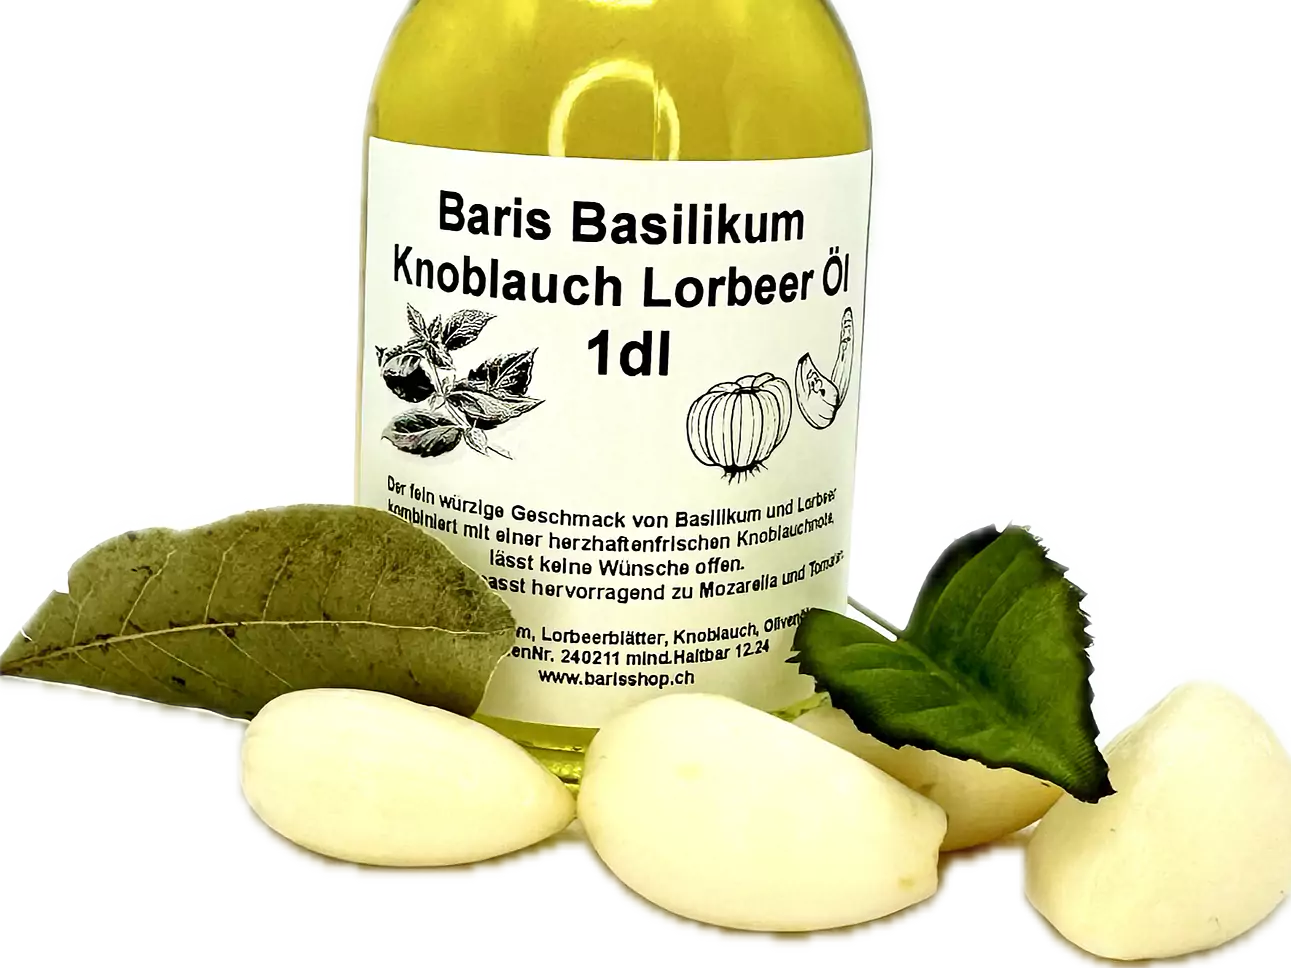 Basilikum Knoblauch Lorbeer Öl